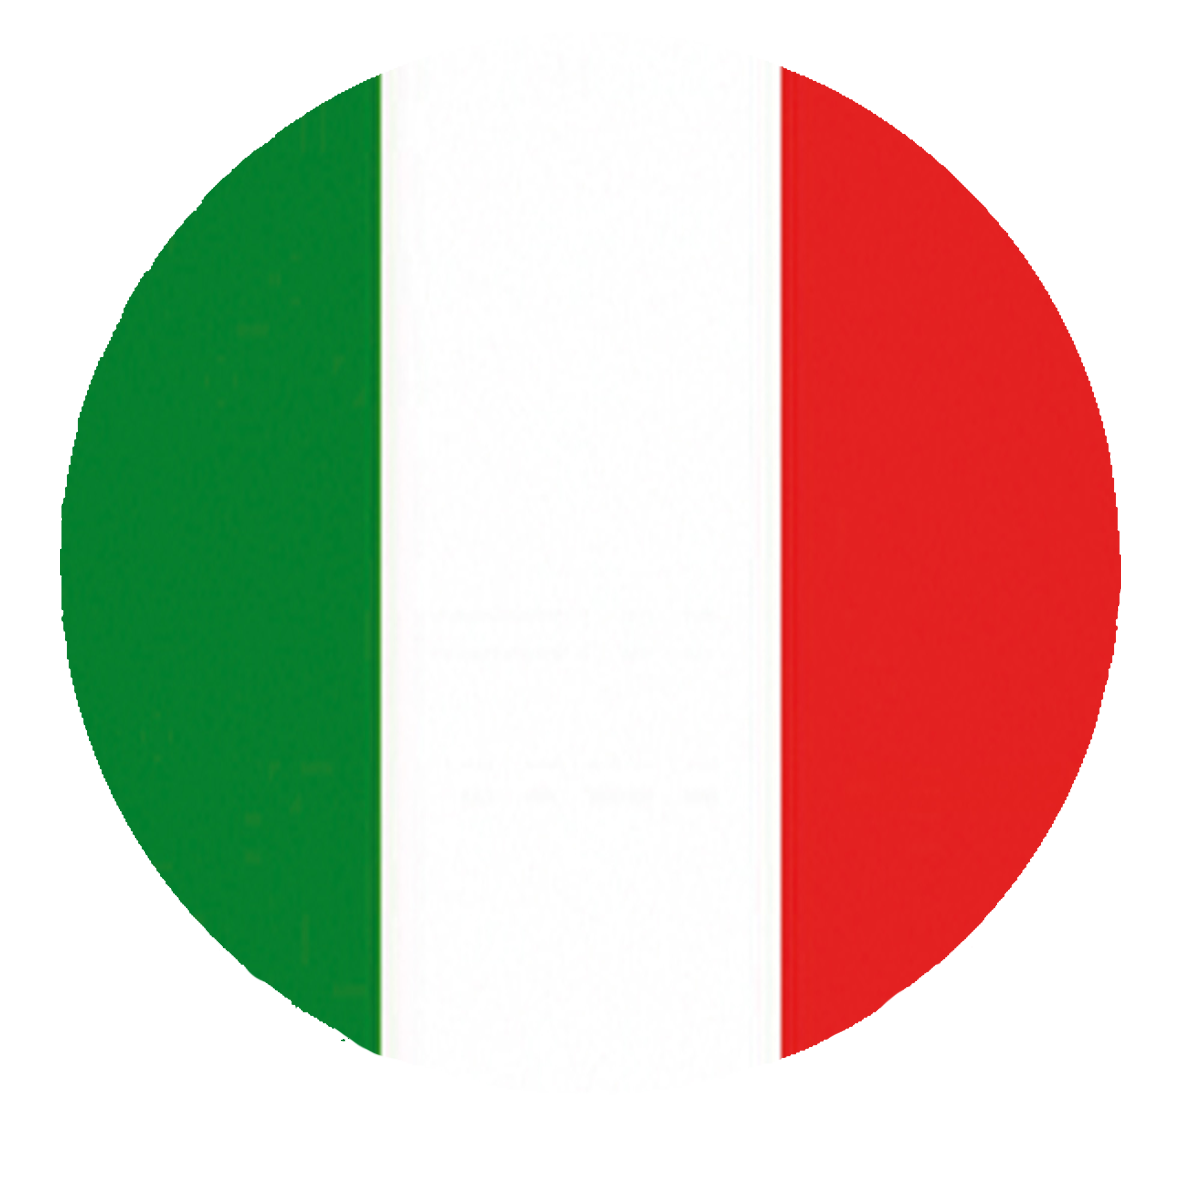 italy flag icon